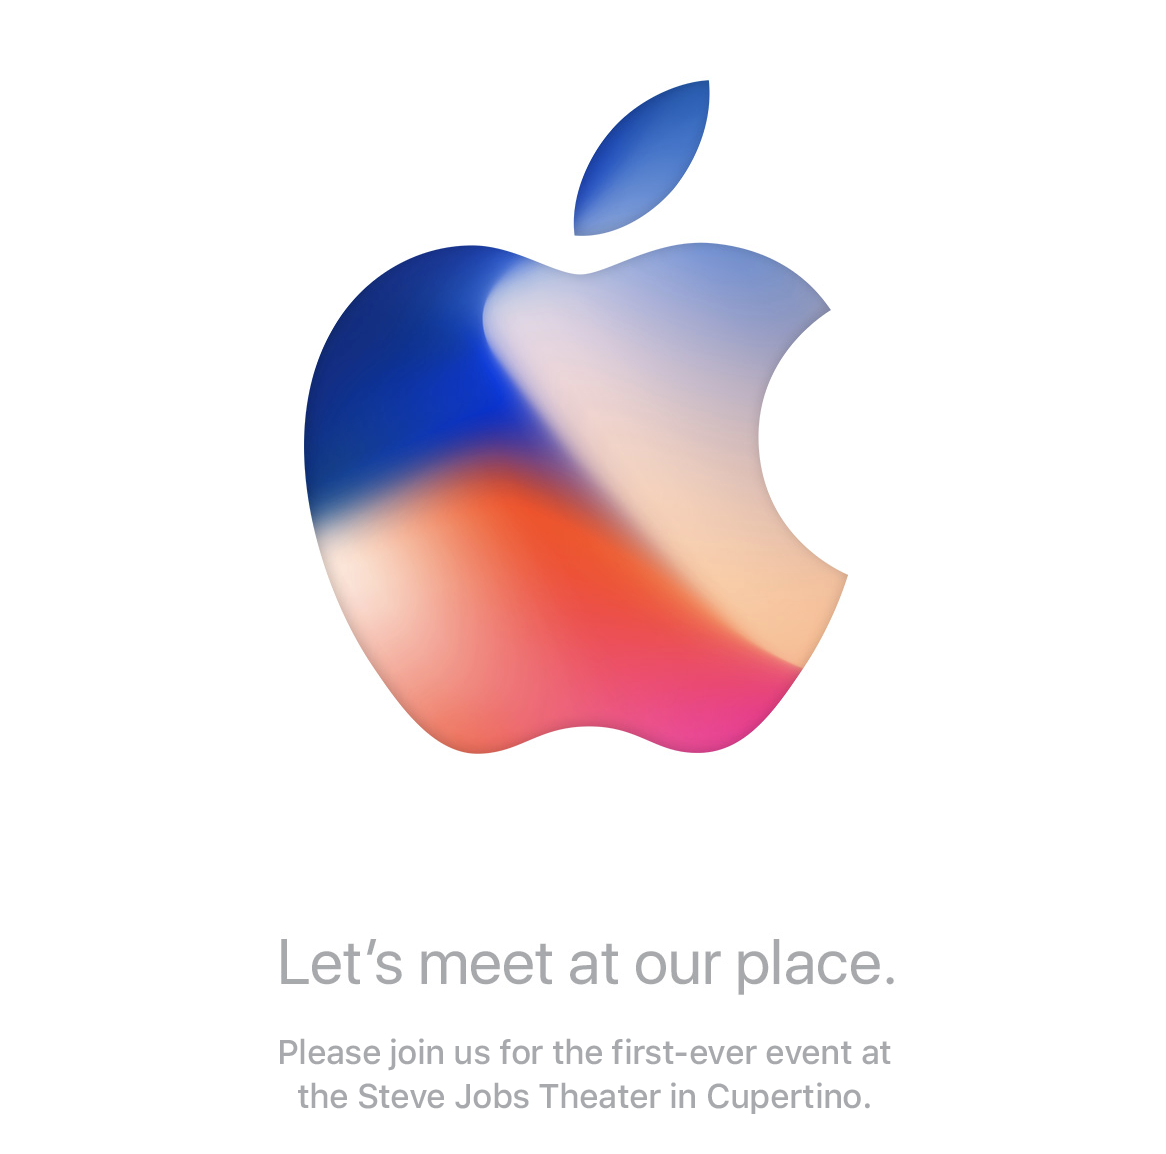 AppleWatch Series3の発表は日本時間で9月13日の午前2時！新設の「スティーブ・ジョブズ・シアター」で開催のイベントで